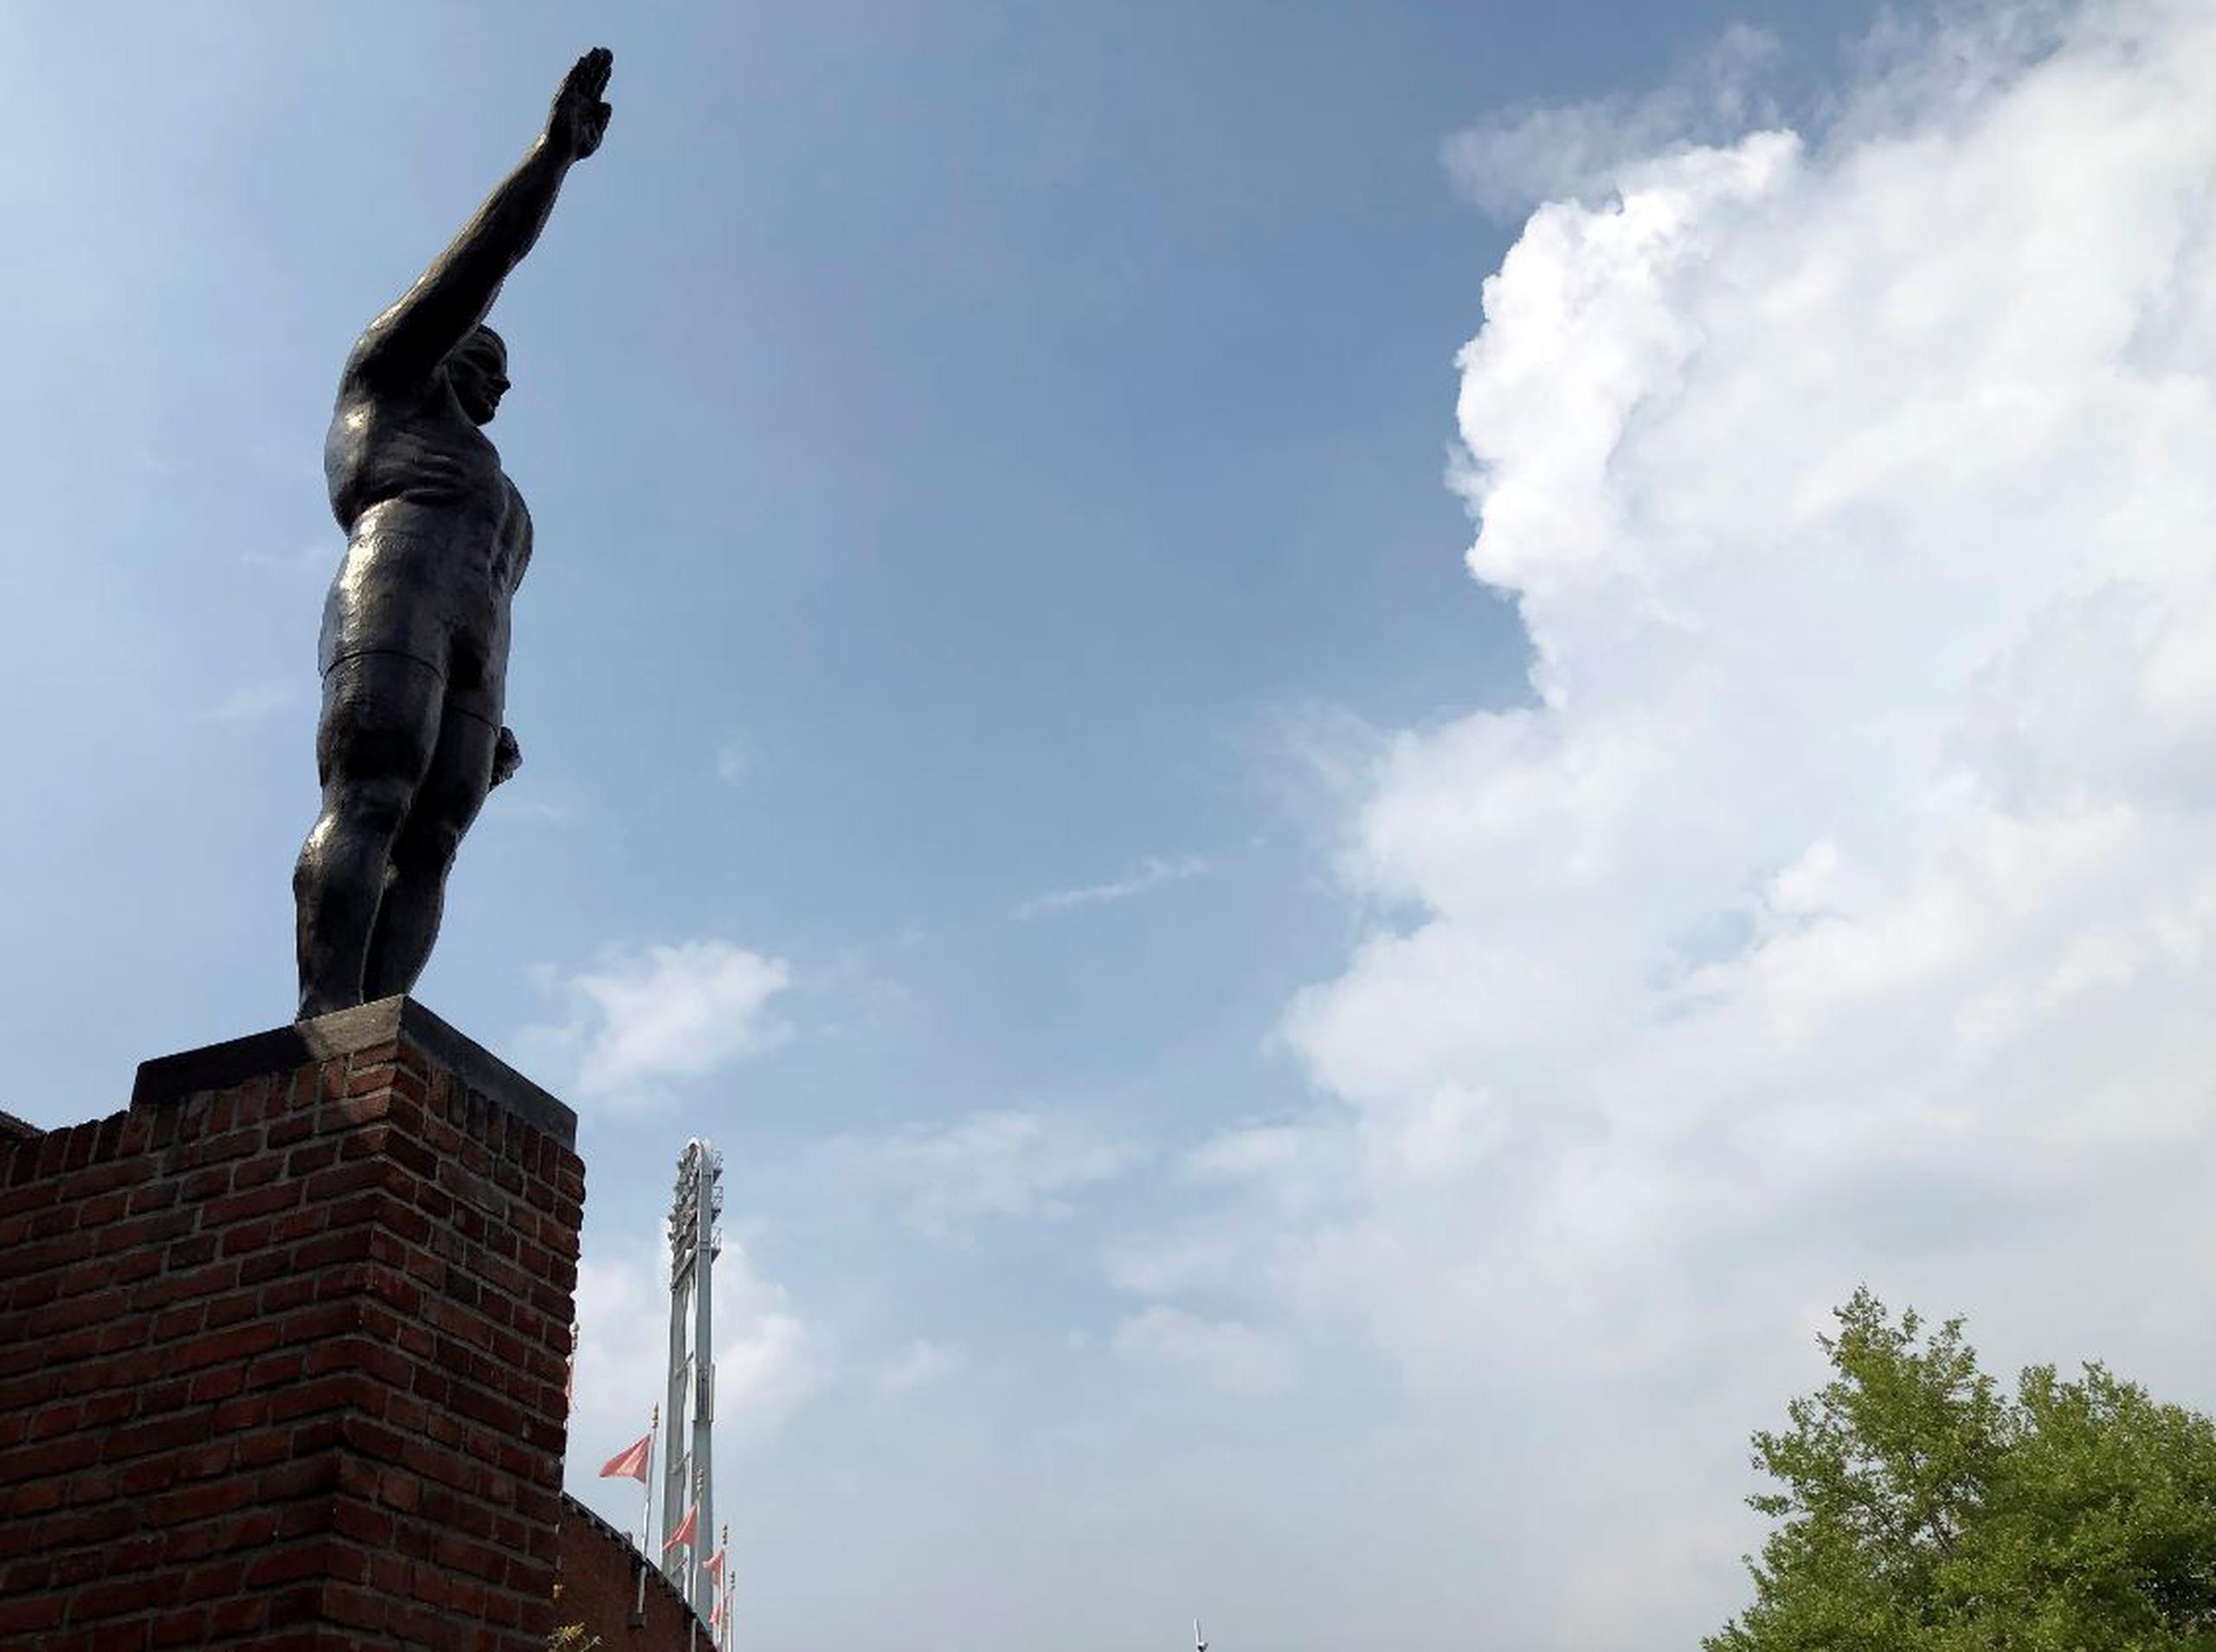 La estatua de bronce de un deportista saludando se encuentra en las afueras del Estadio Olímpico de Ámsterdam